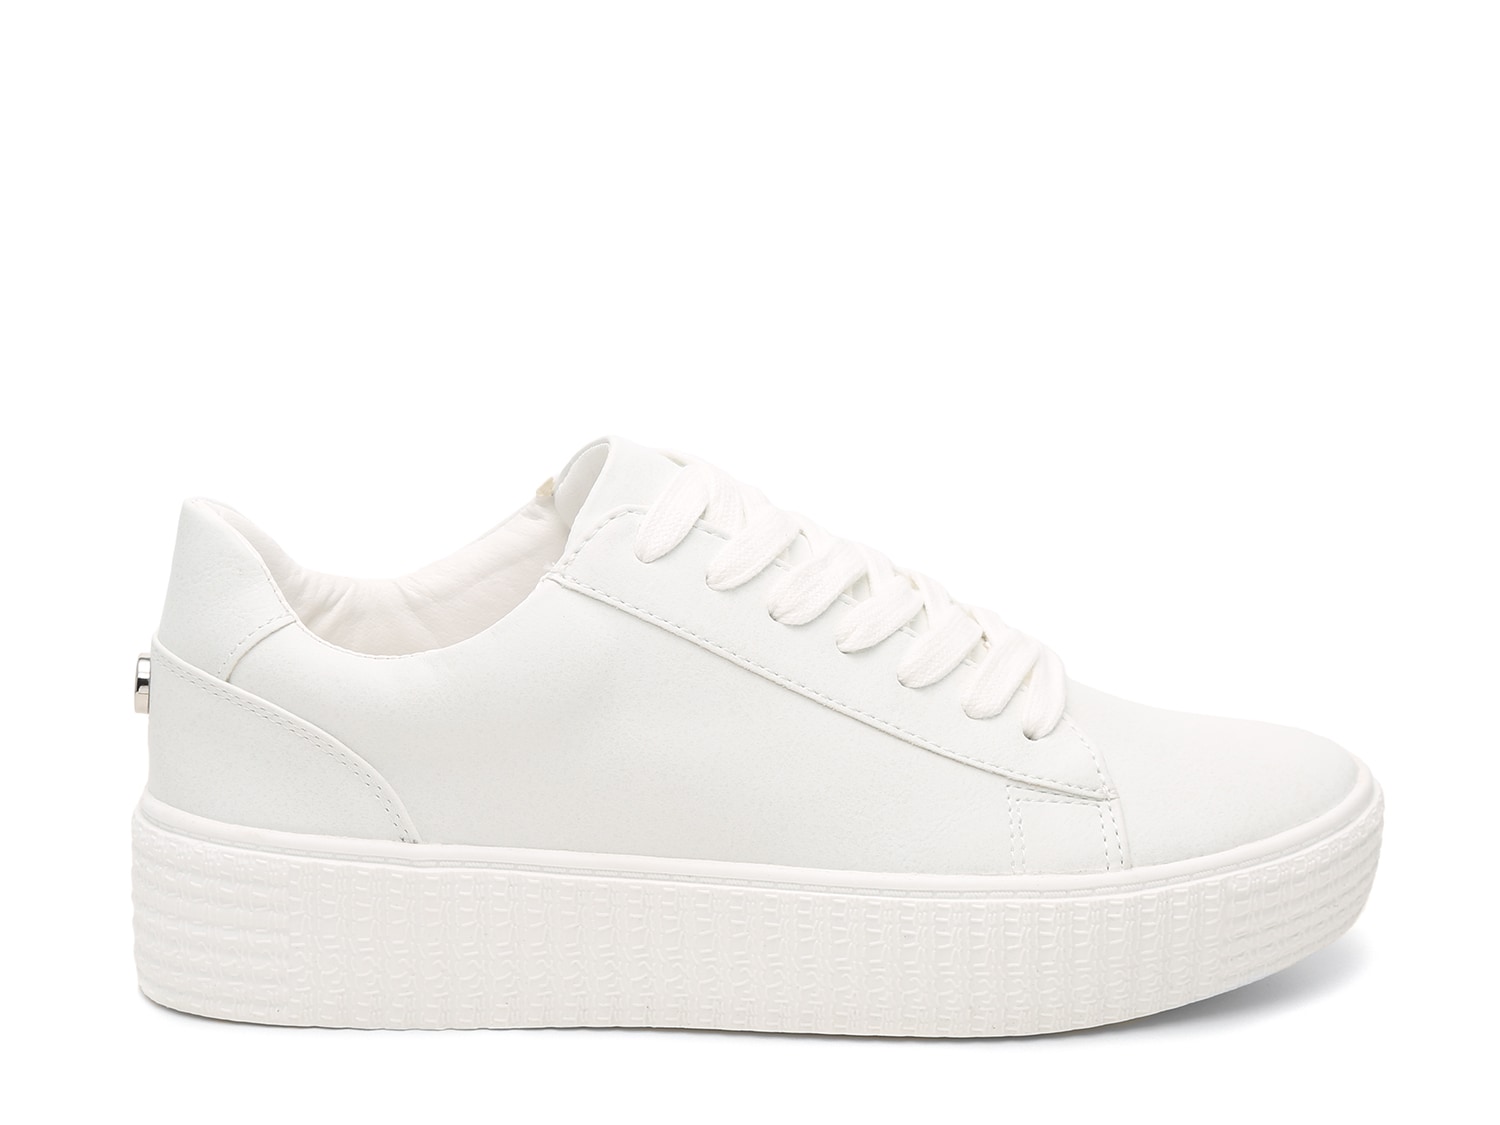 slip on white platform sneakers